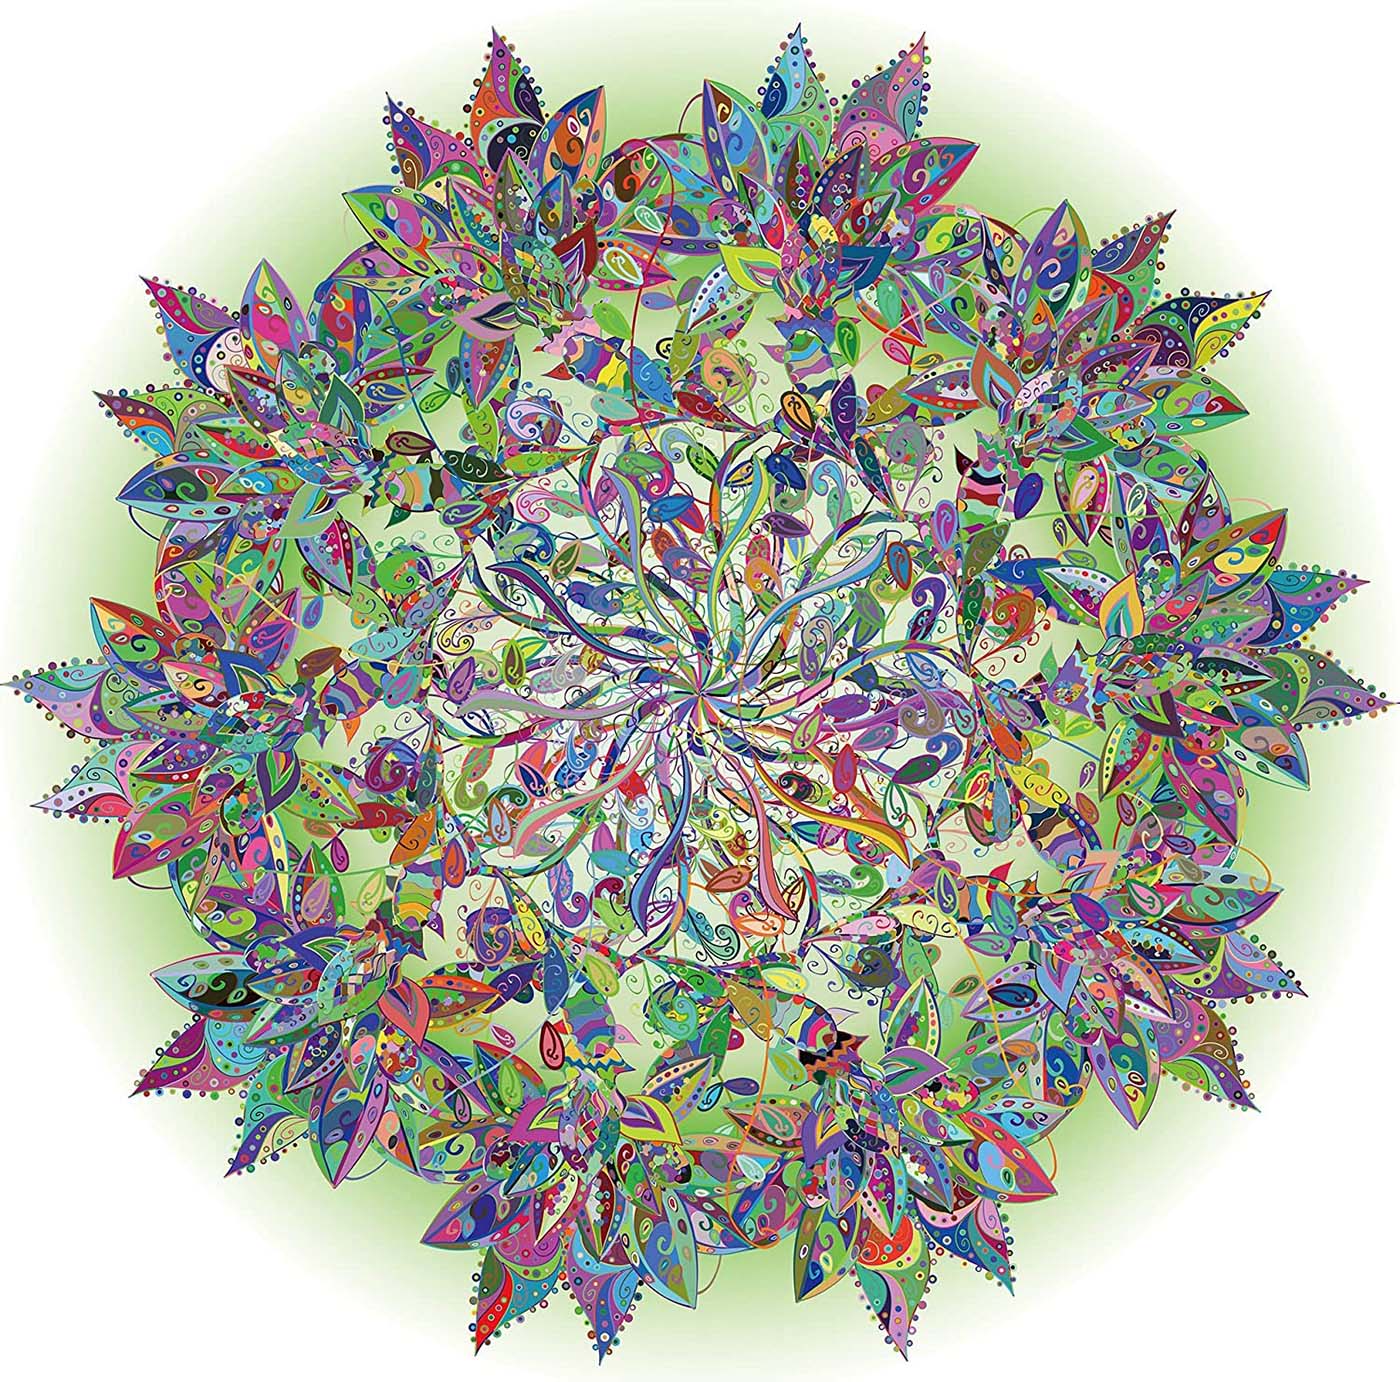 Pickforu® Rompecabezas de Mandala de Hojas Florecientes de 1000 Piezas